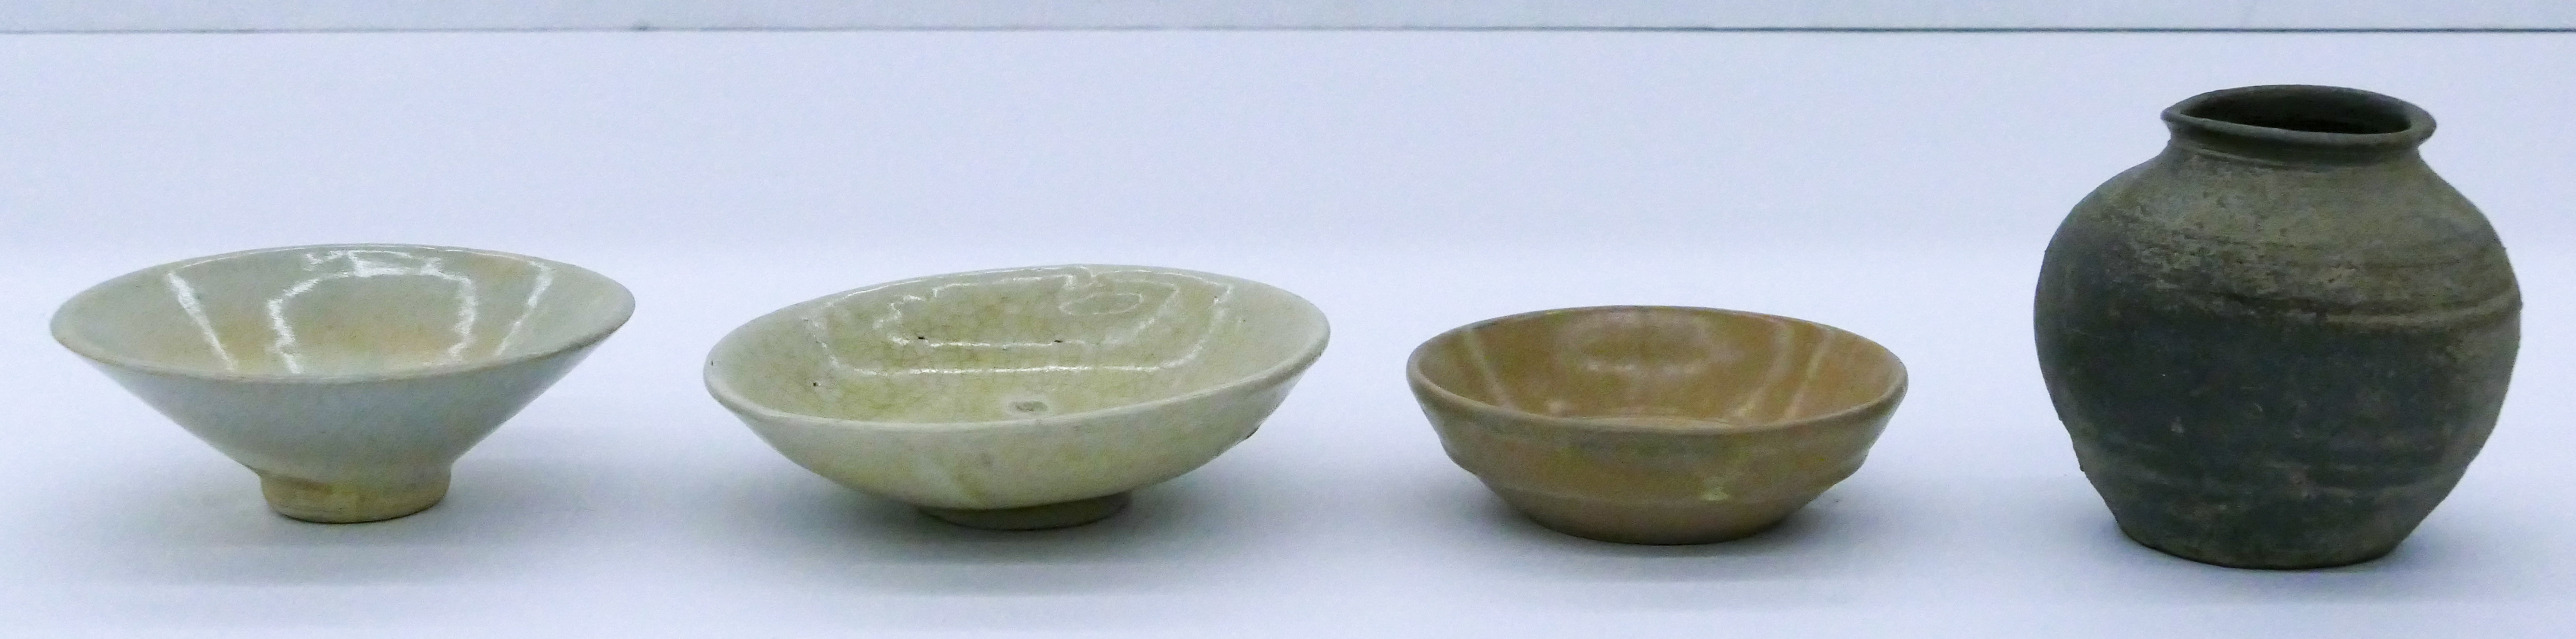 Box 4pc Ancient Korean Ceramics 3afc79